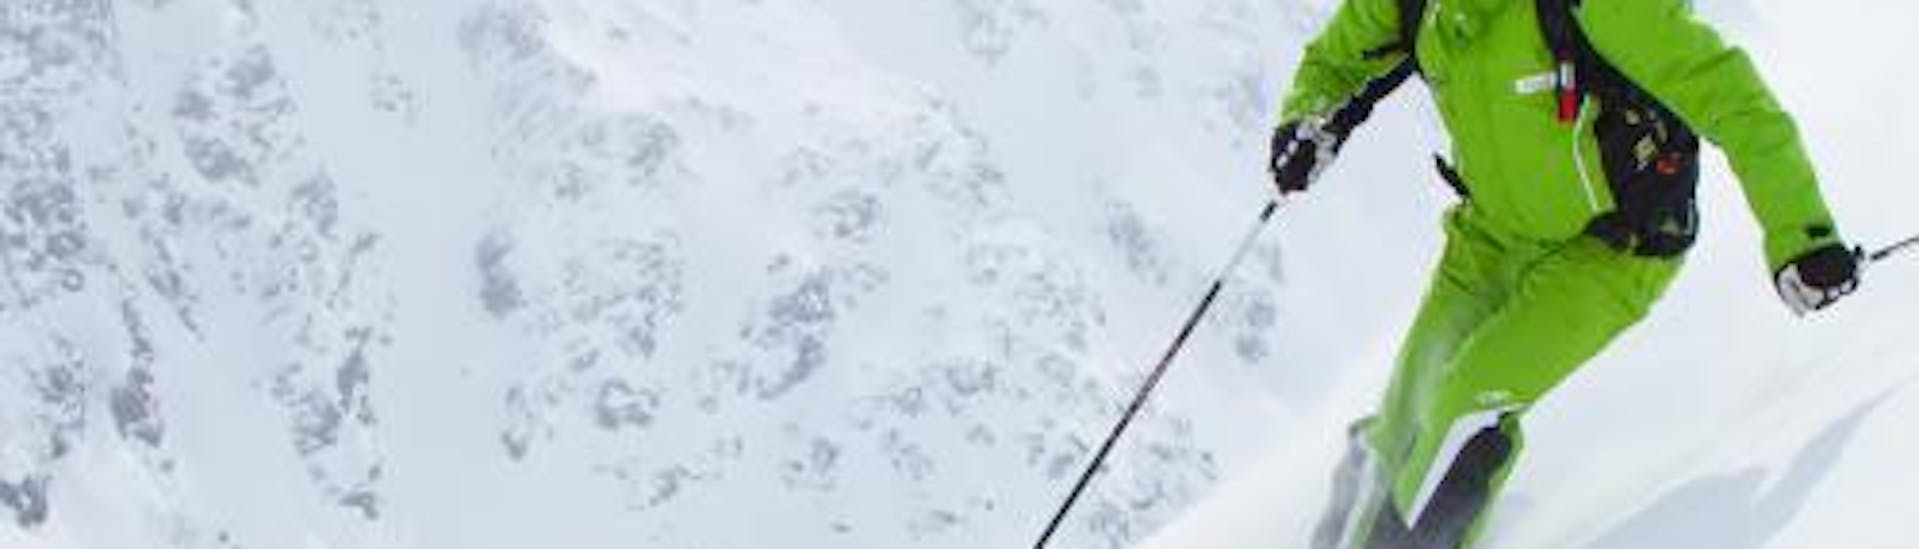 Privélessen skiën voor volwassenen van alle niveaus.